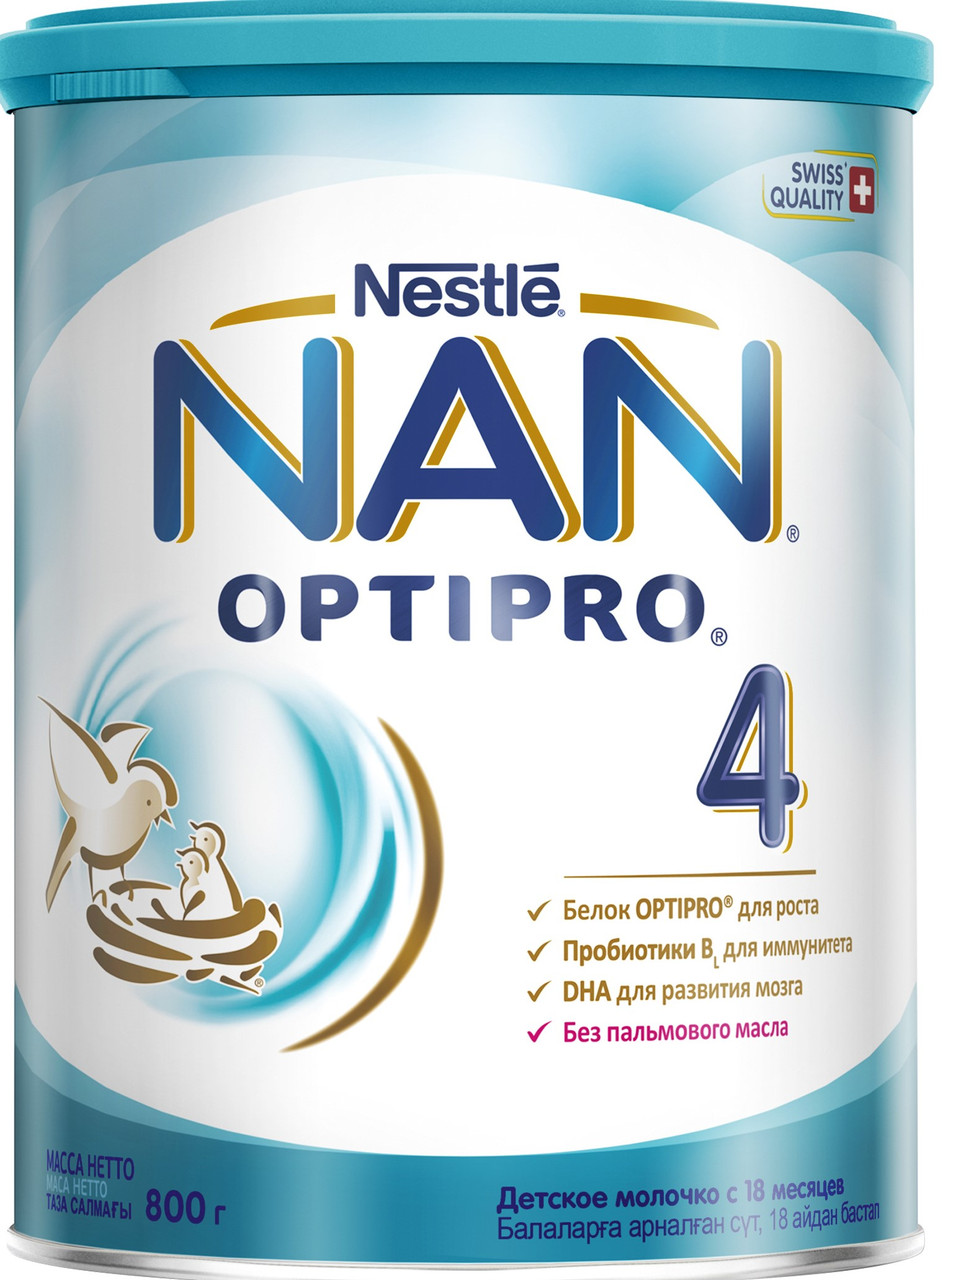 NAN® 4 OPTIPRO® (НАН)  800 г.